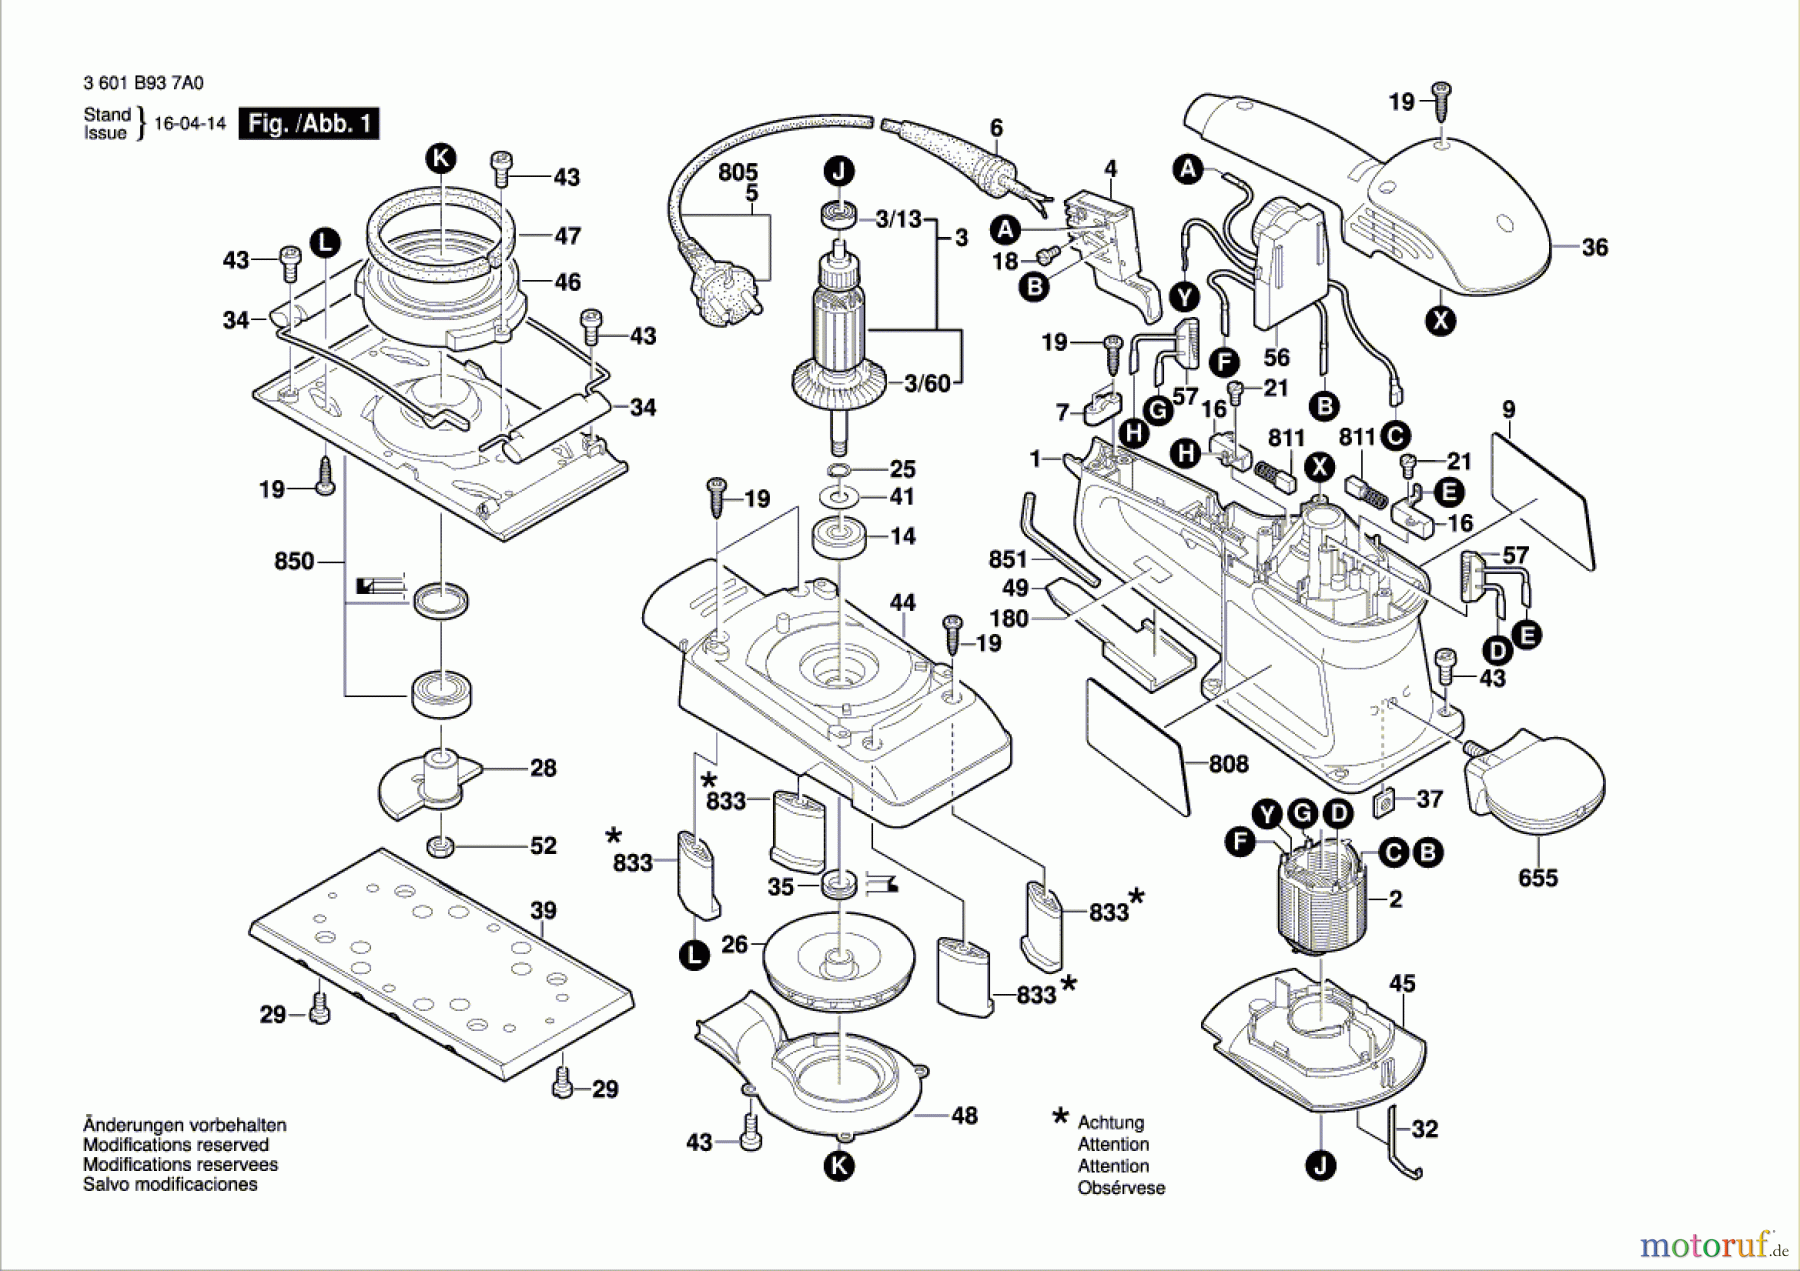  Bosch Werkzeug Schwingschleifer GSS 280 AE Seite 1